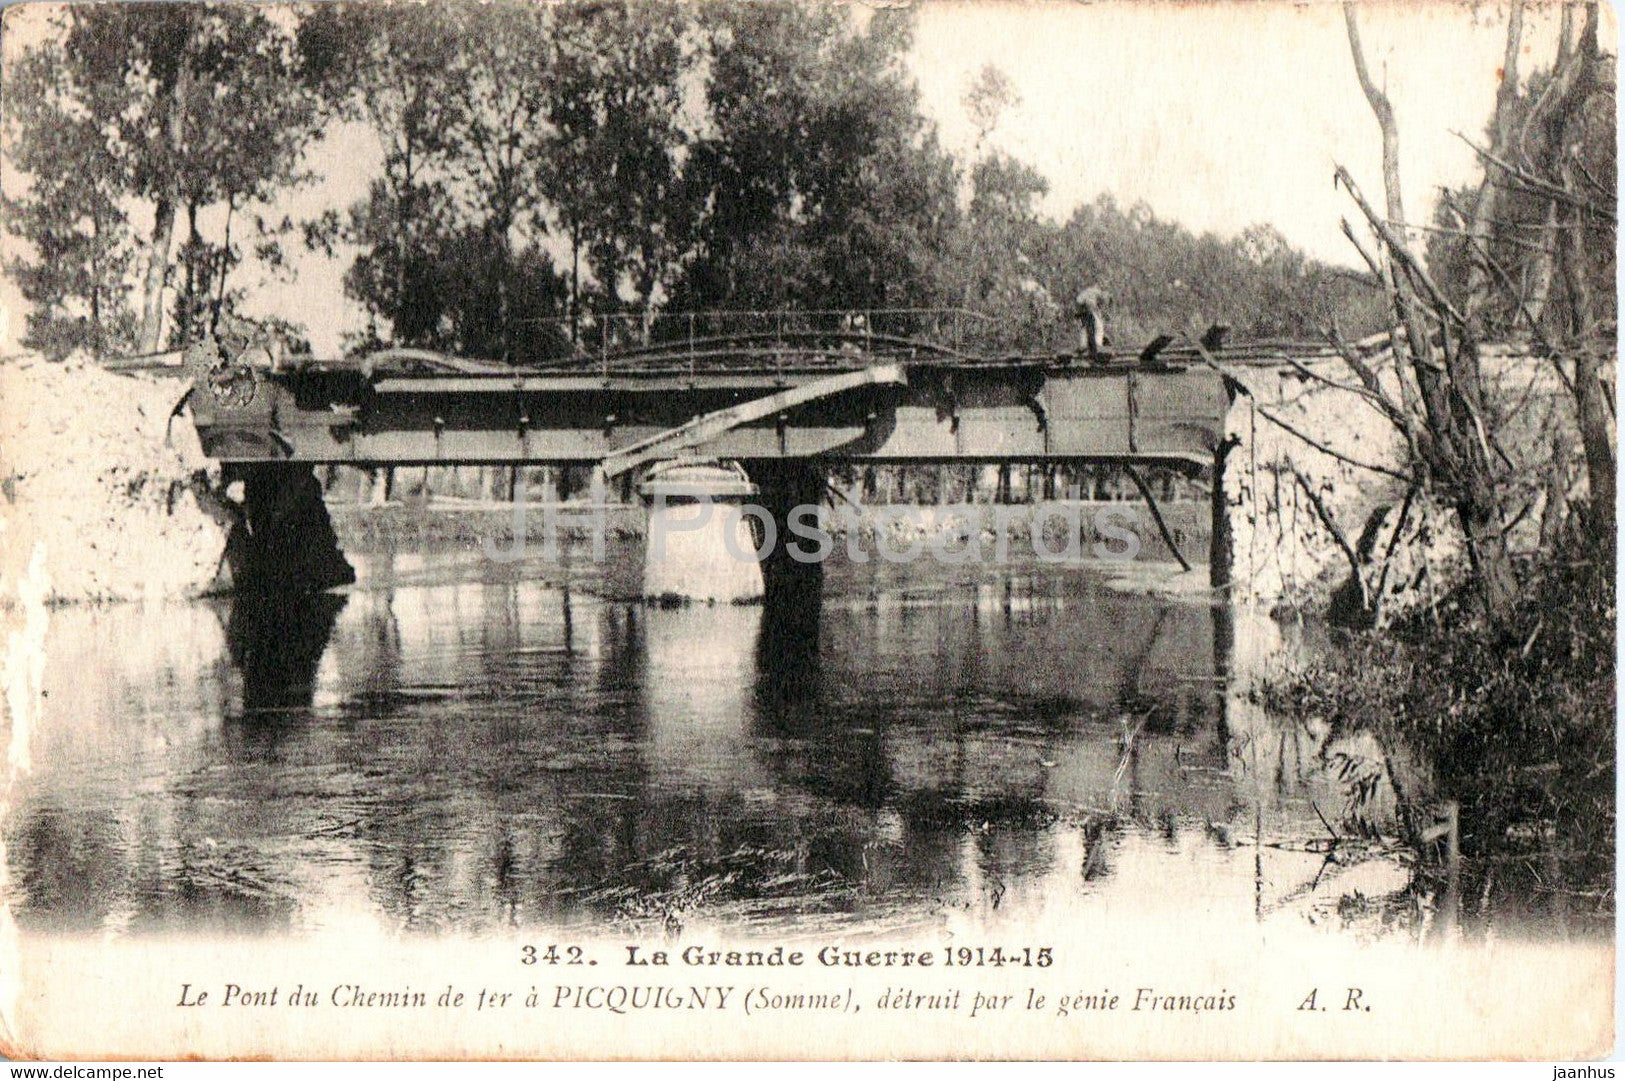 Le Pont du Chemin de fer a Picquigny detruit par le genie Francais - WWI - 342 - old postcard - 1916 - France - used - JH Postcards